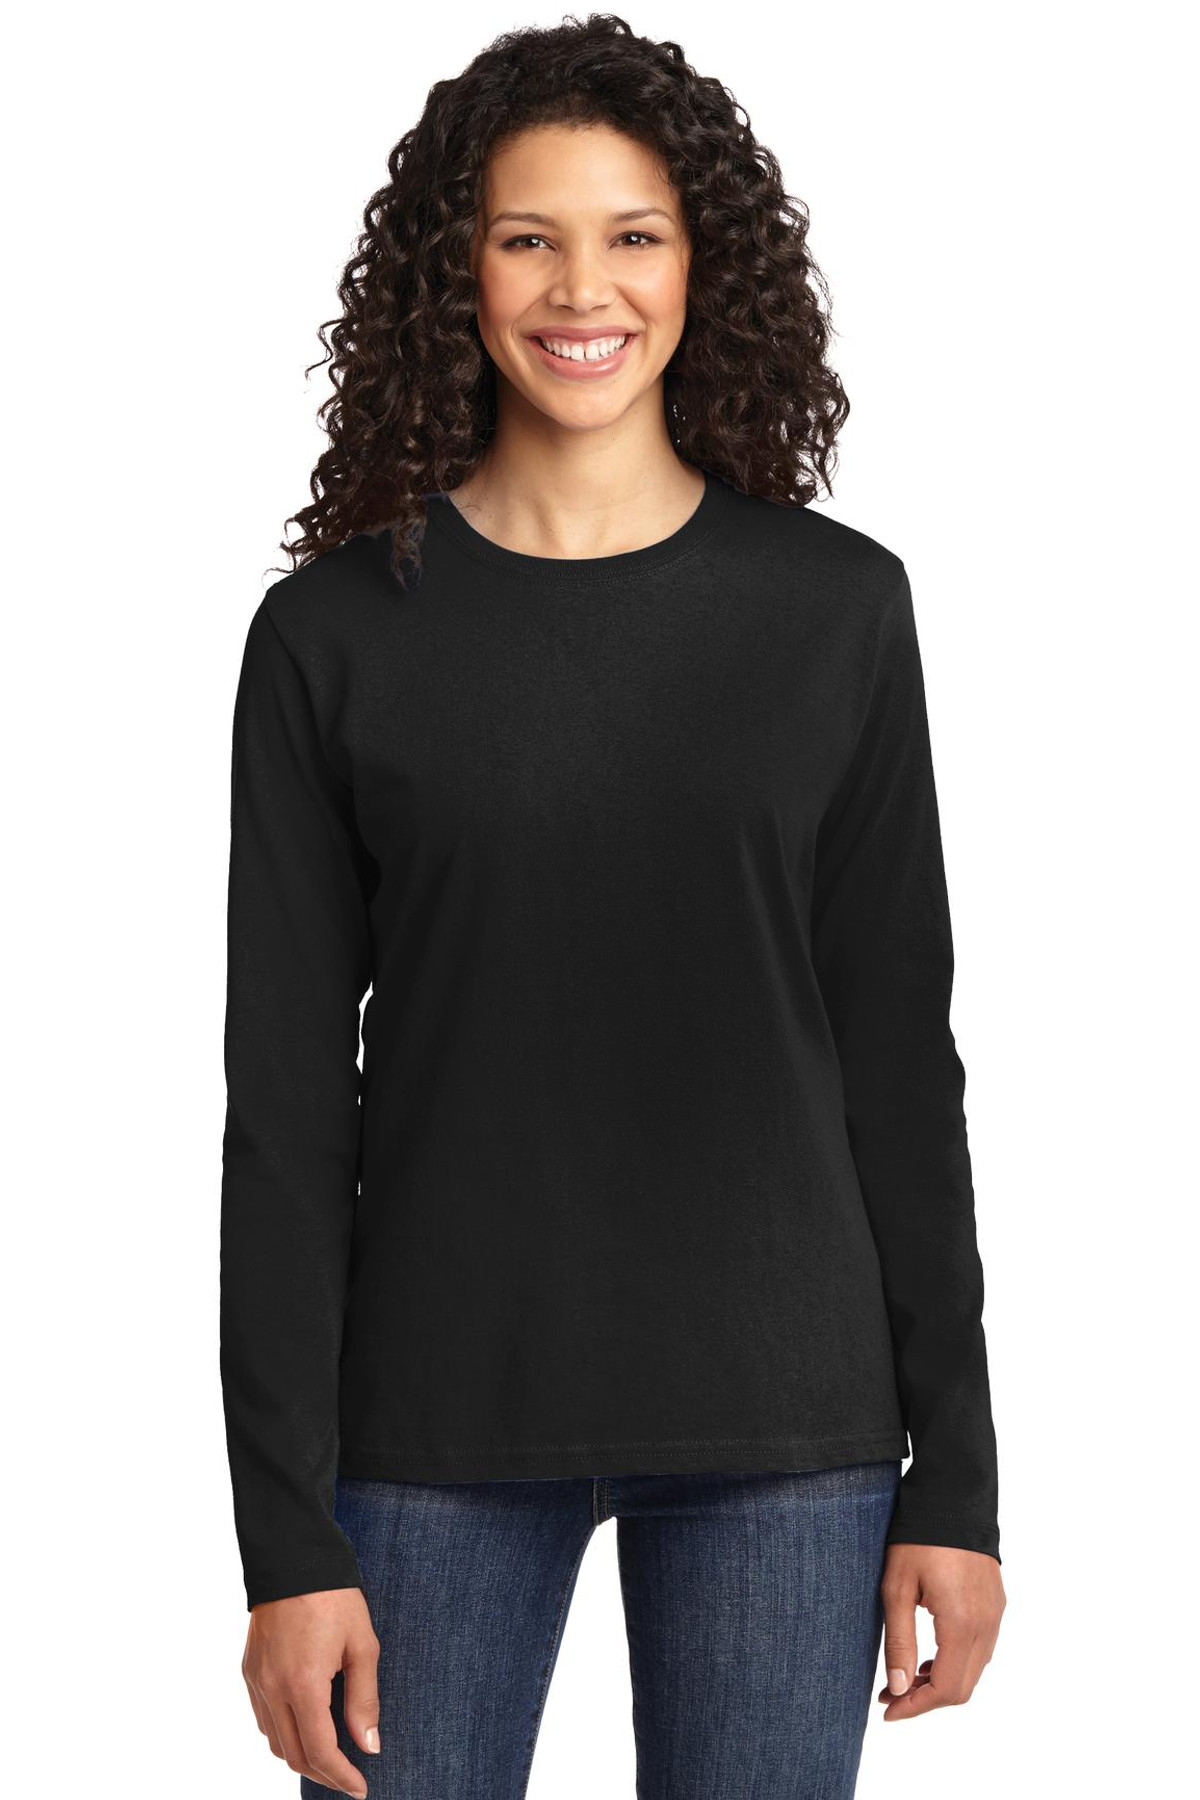 Düz, Baskısız Siyah Uzun Kollu Kadın T-shirt 2'li Eko Paket